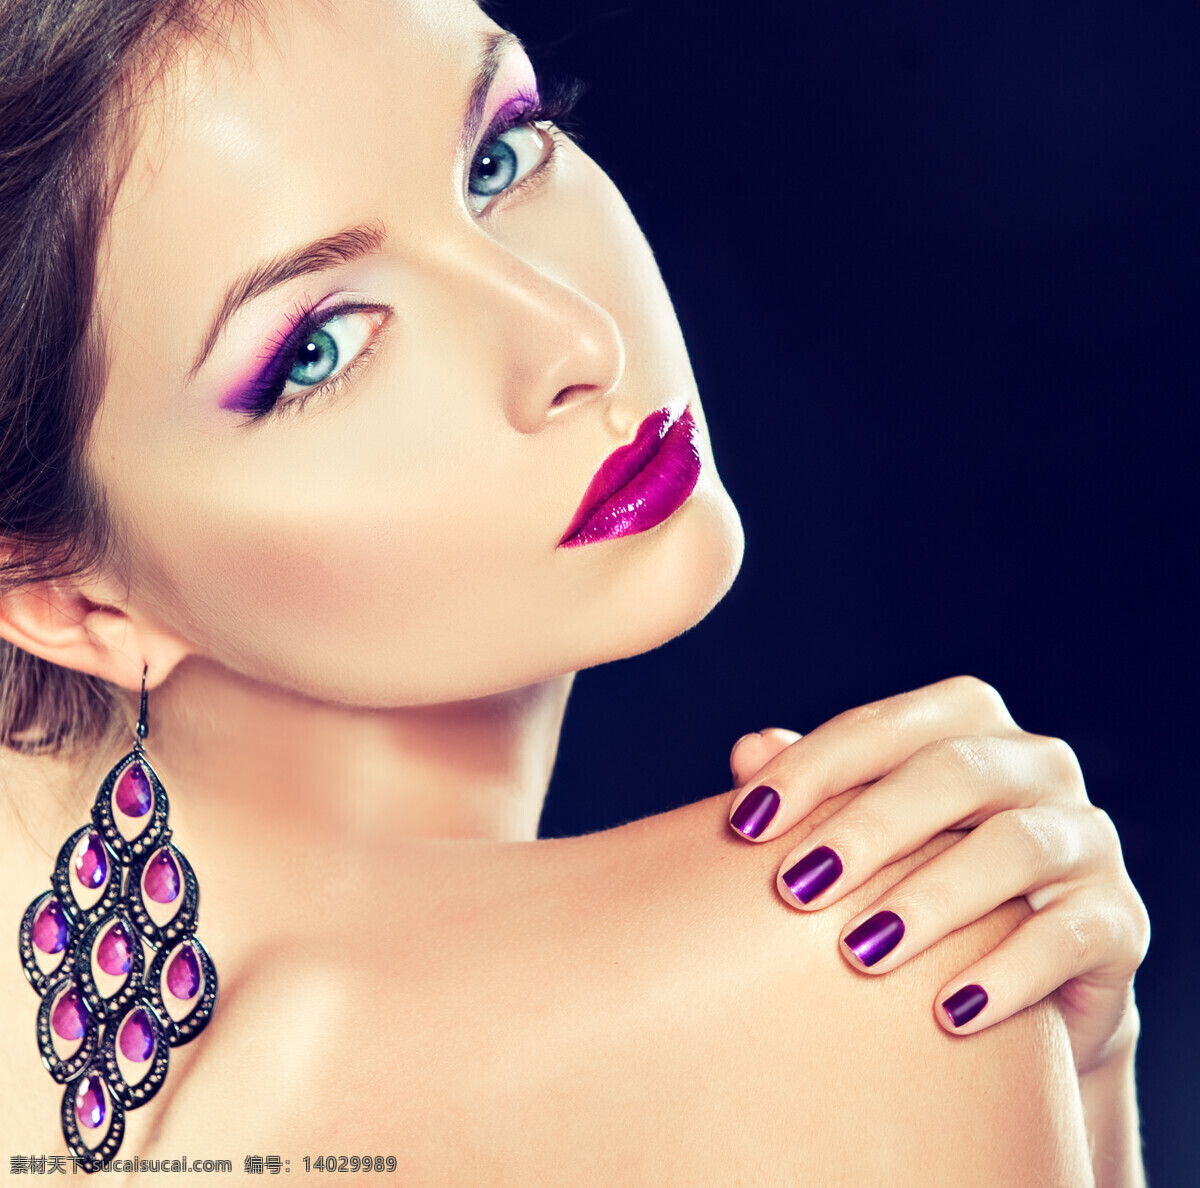 戴 紫色 耳环 外国 美女图片 美女 时尚美女 性感美女 外国美女 紫色耳环 手势 动作 人物摄影 人物图片